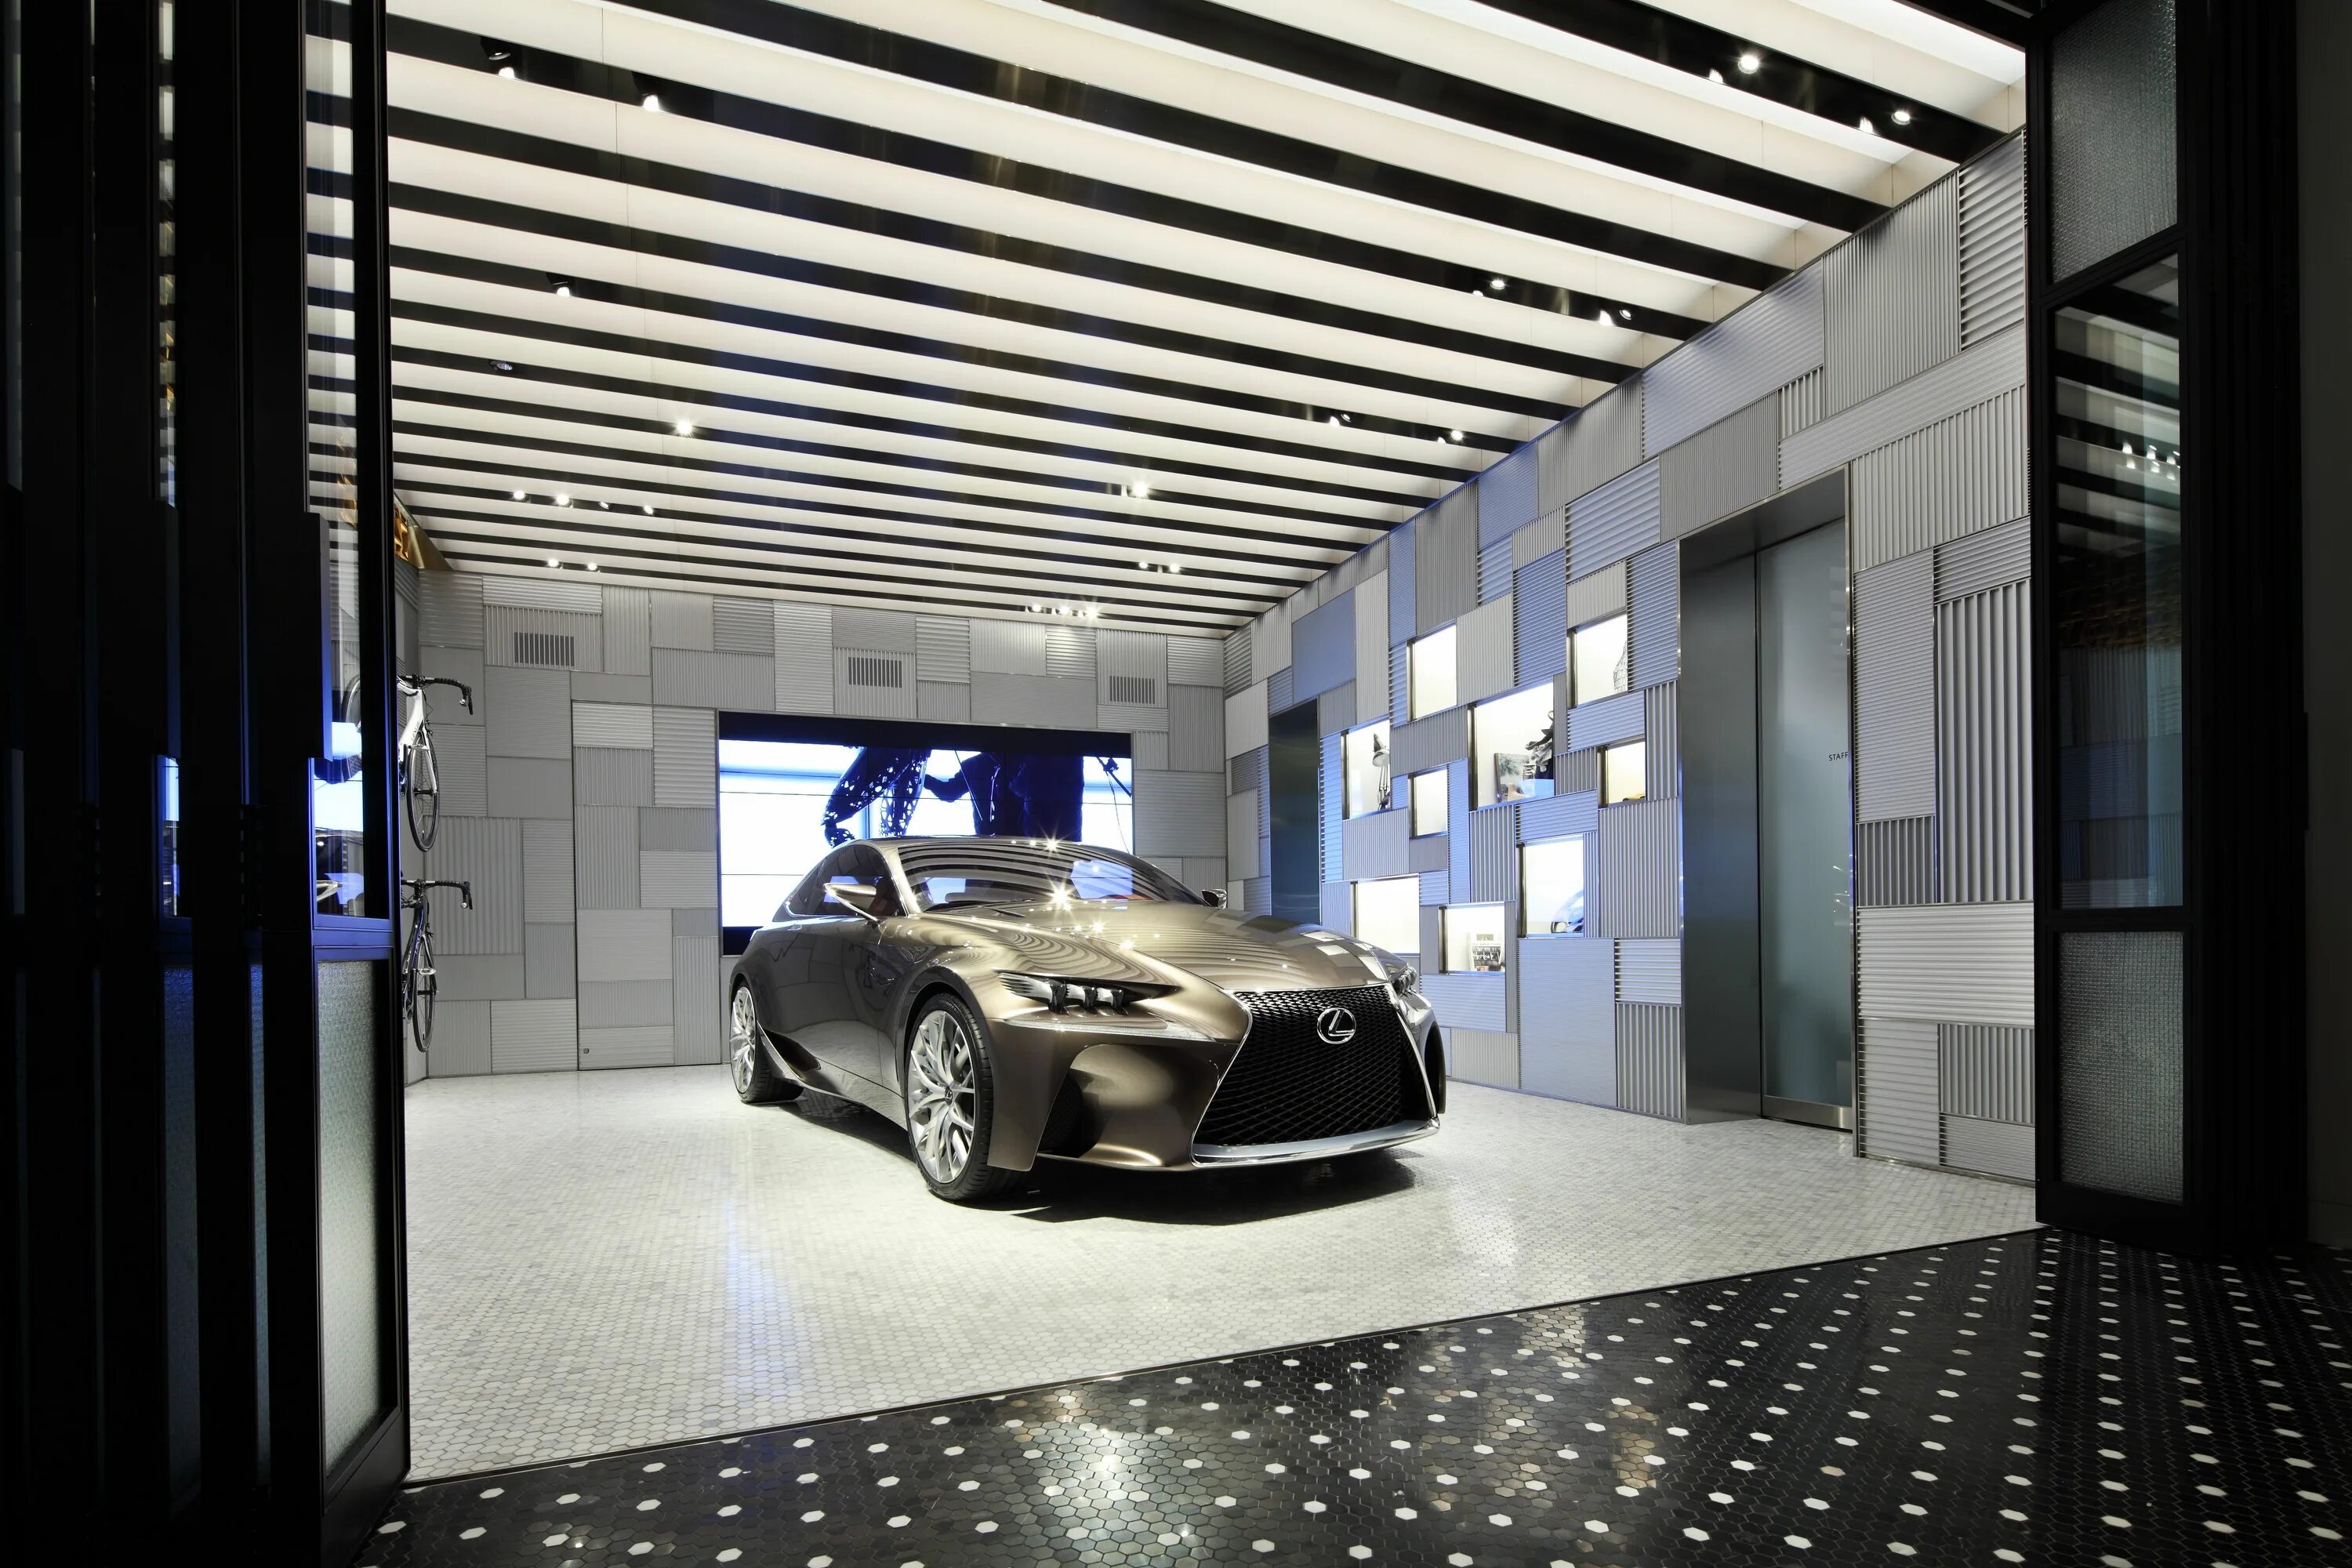 Lexus Showroom Interior. Лексус в Токио. Интерьер автосалона. Красивые интерьеры автомобилей. That is car in the shop